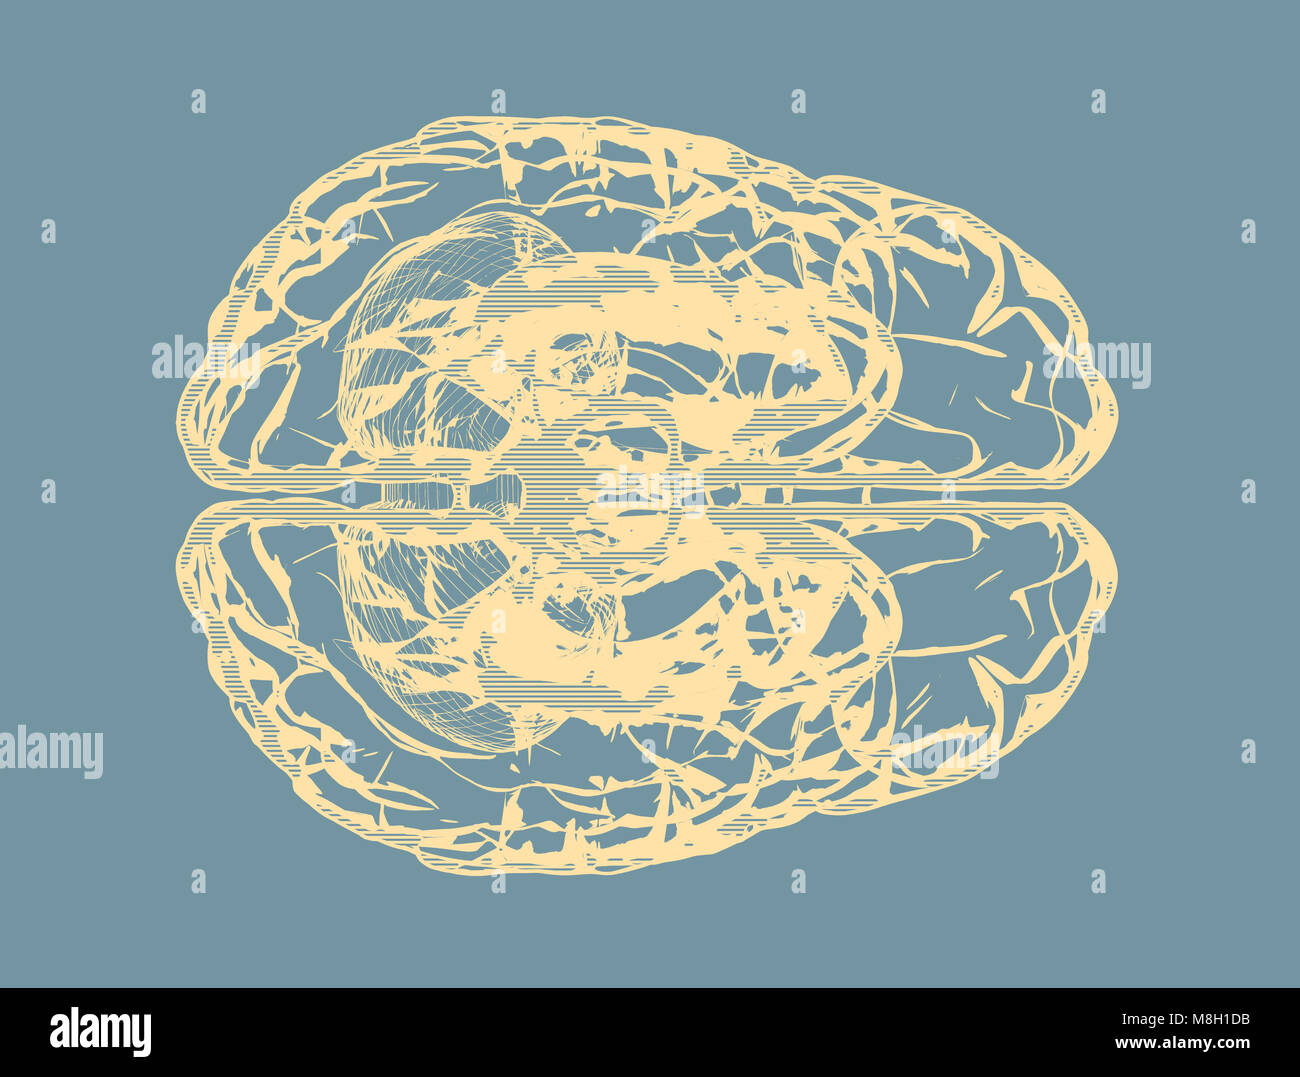 Menschliche Gehirn - Seitenansicht blau 3d Render isoliert auf weiss Stockfoto